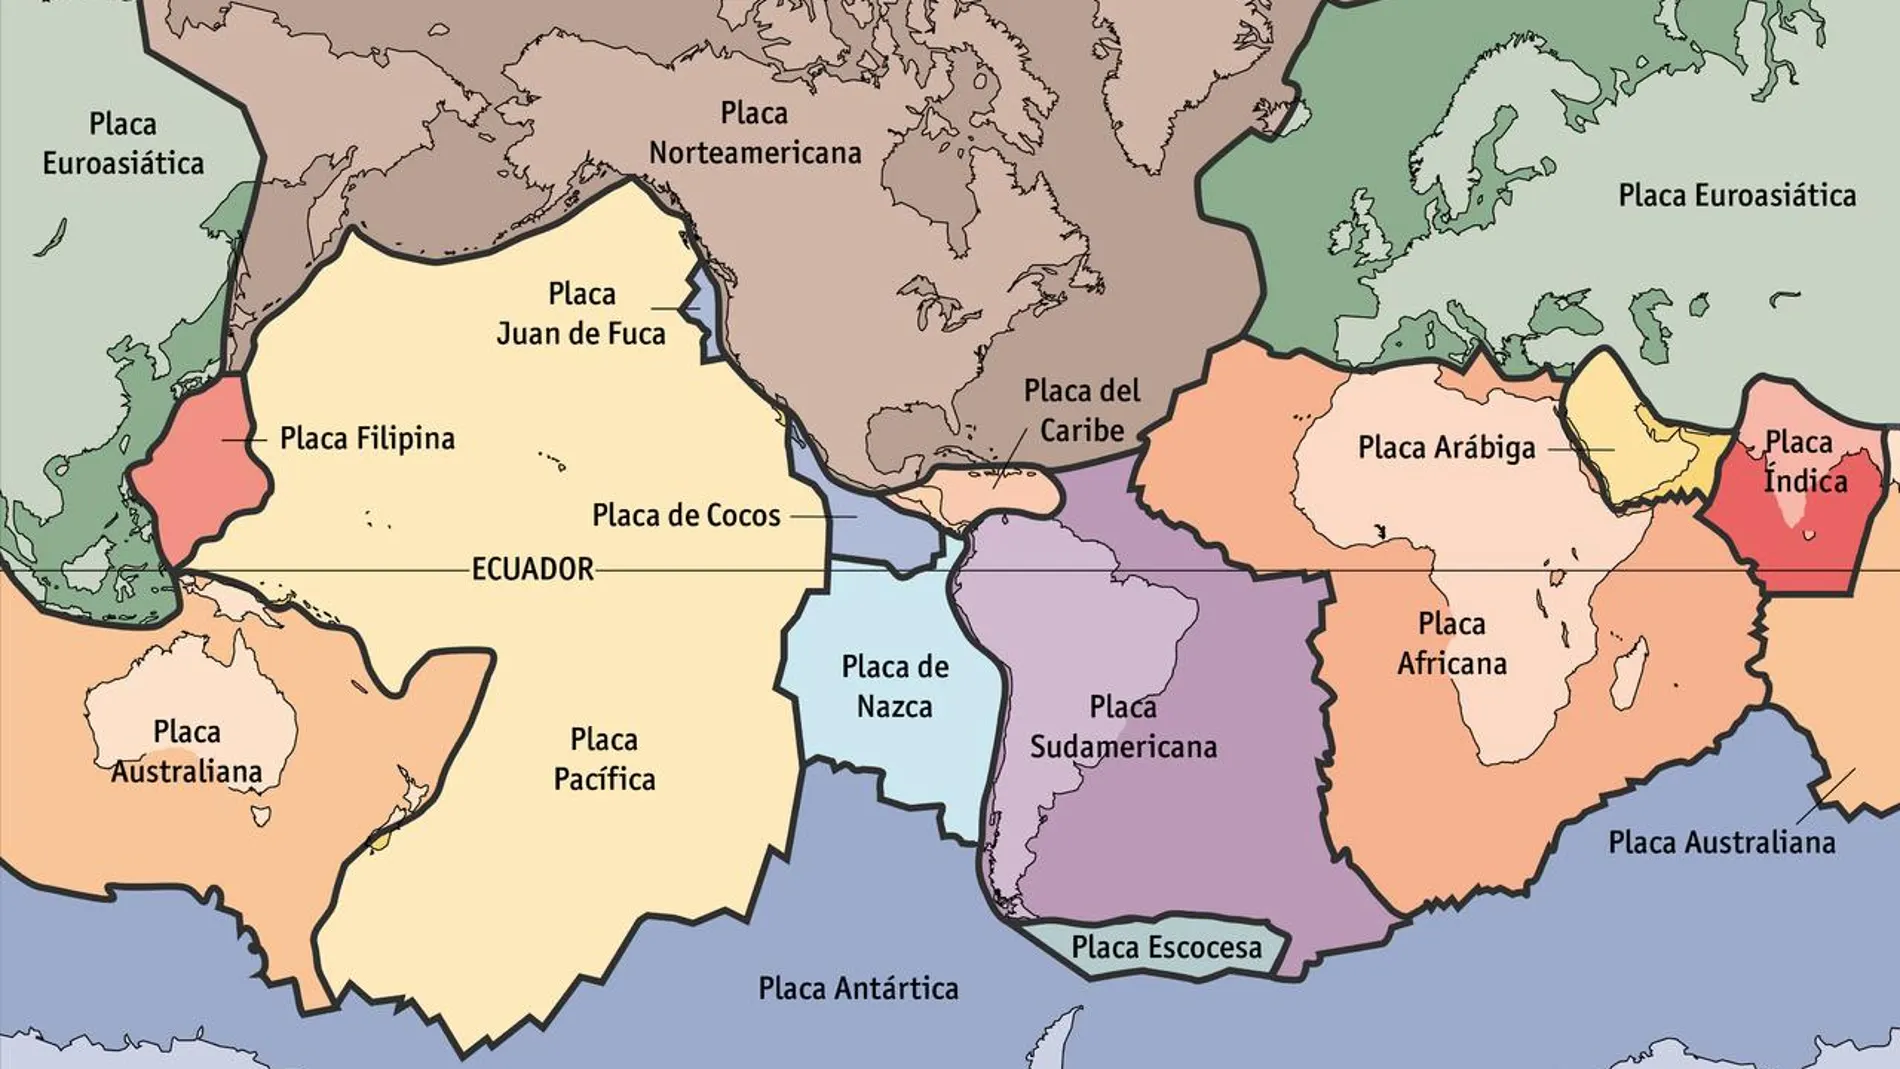 Las placas tectónicas en la actualidad. Los límites de placa por los que sale magma y se crea nueva corteza son, fundamentalmente, el que atraviesa el Atlántico de norte a sur, el que atraviesa el Pacífico oriental y el que recorre el sur del Índico.